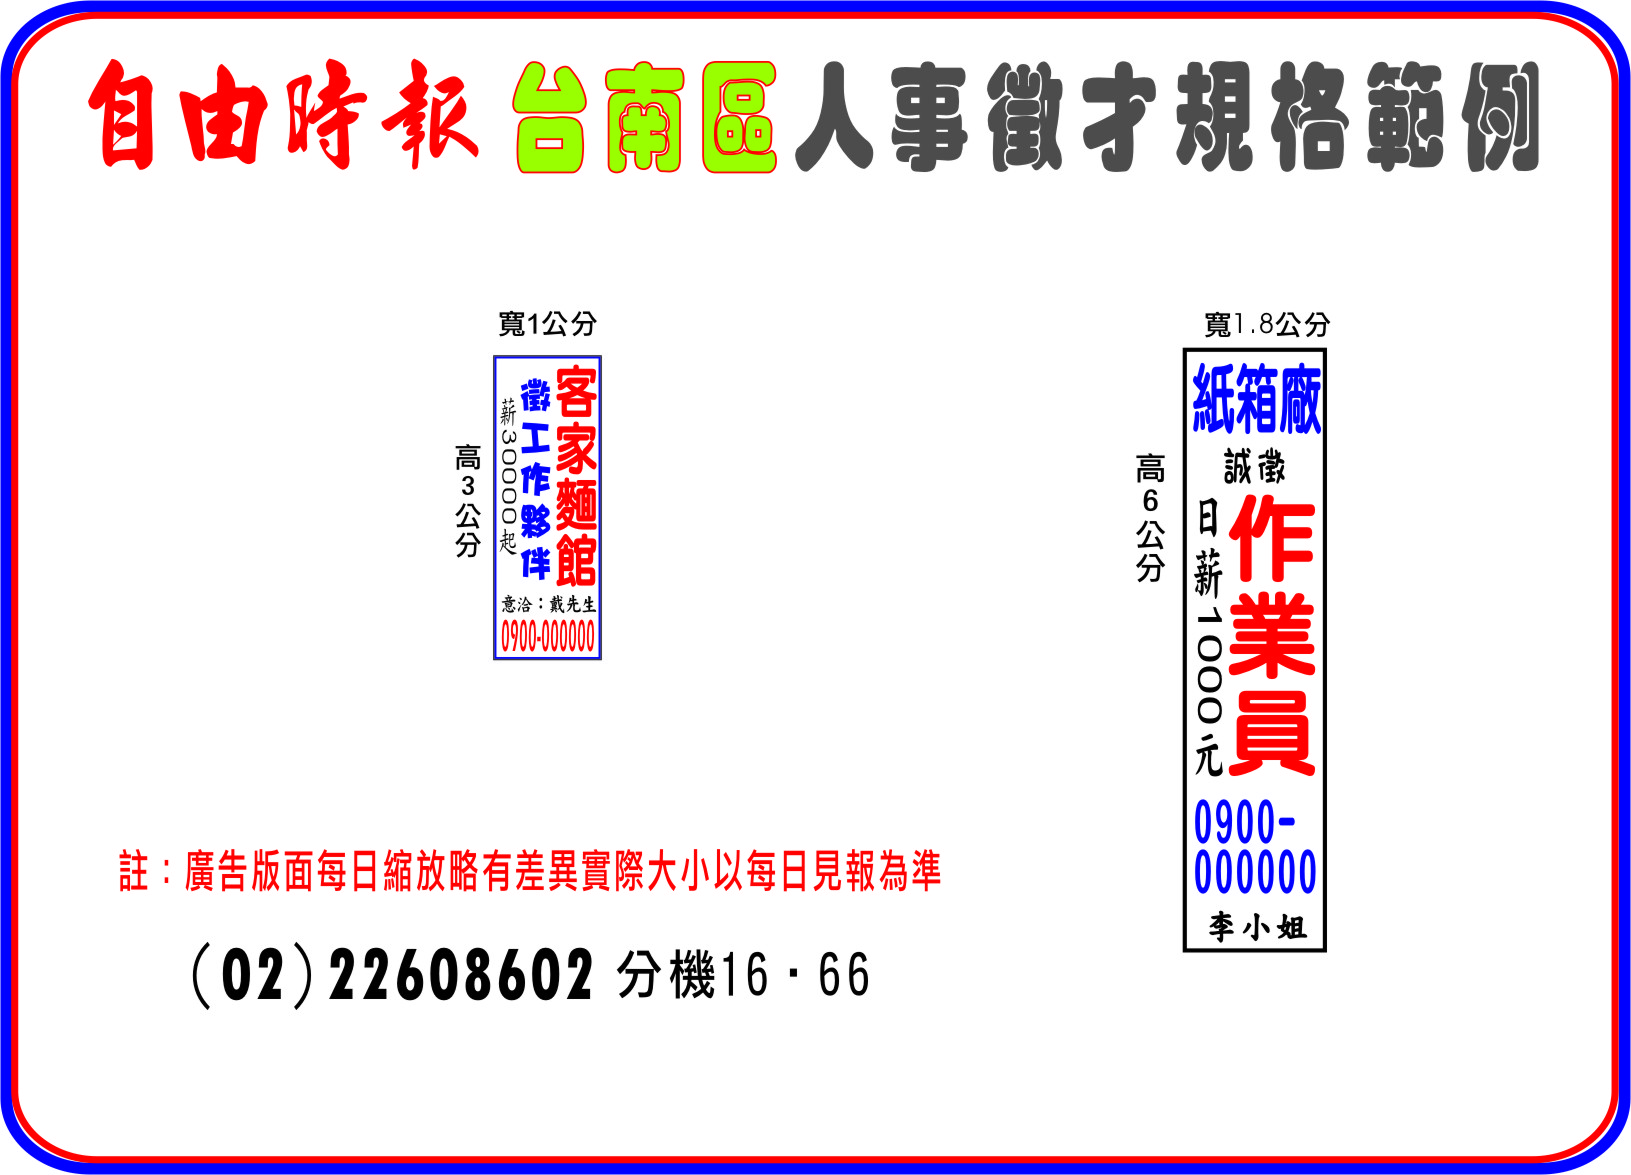 自由時報台南登報求職廣告刊登範例